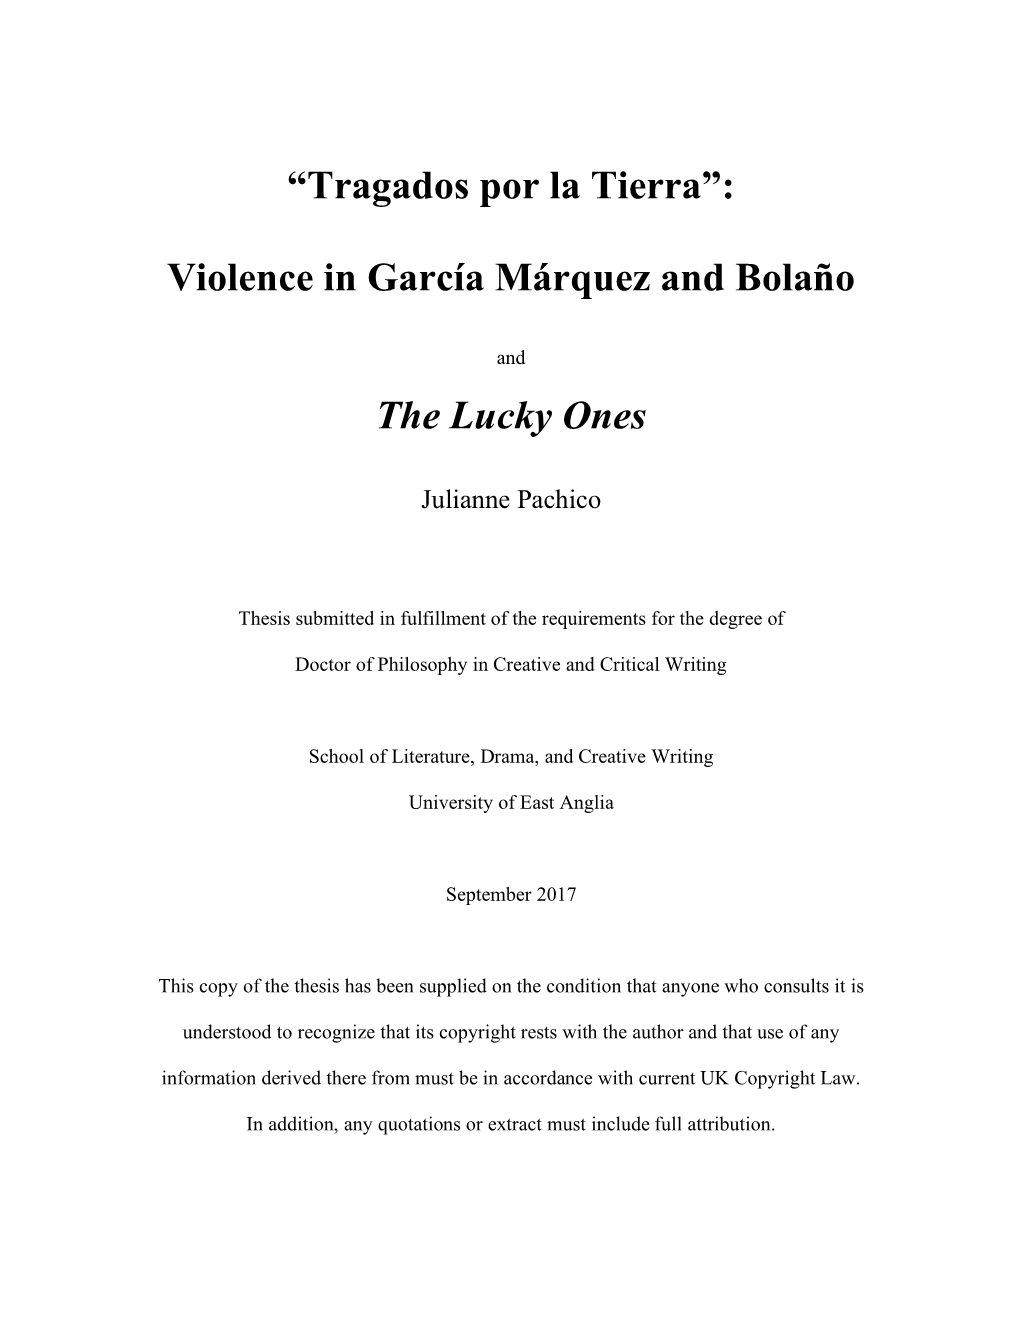 Violence in García Márquez and Bolaño the Lucky Ones